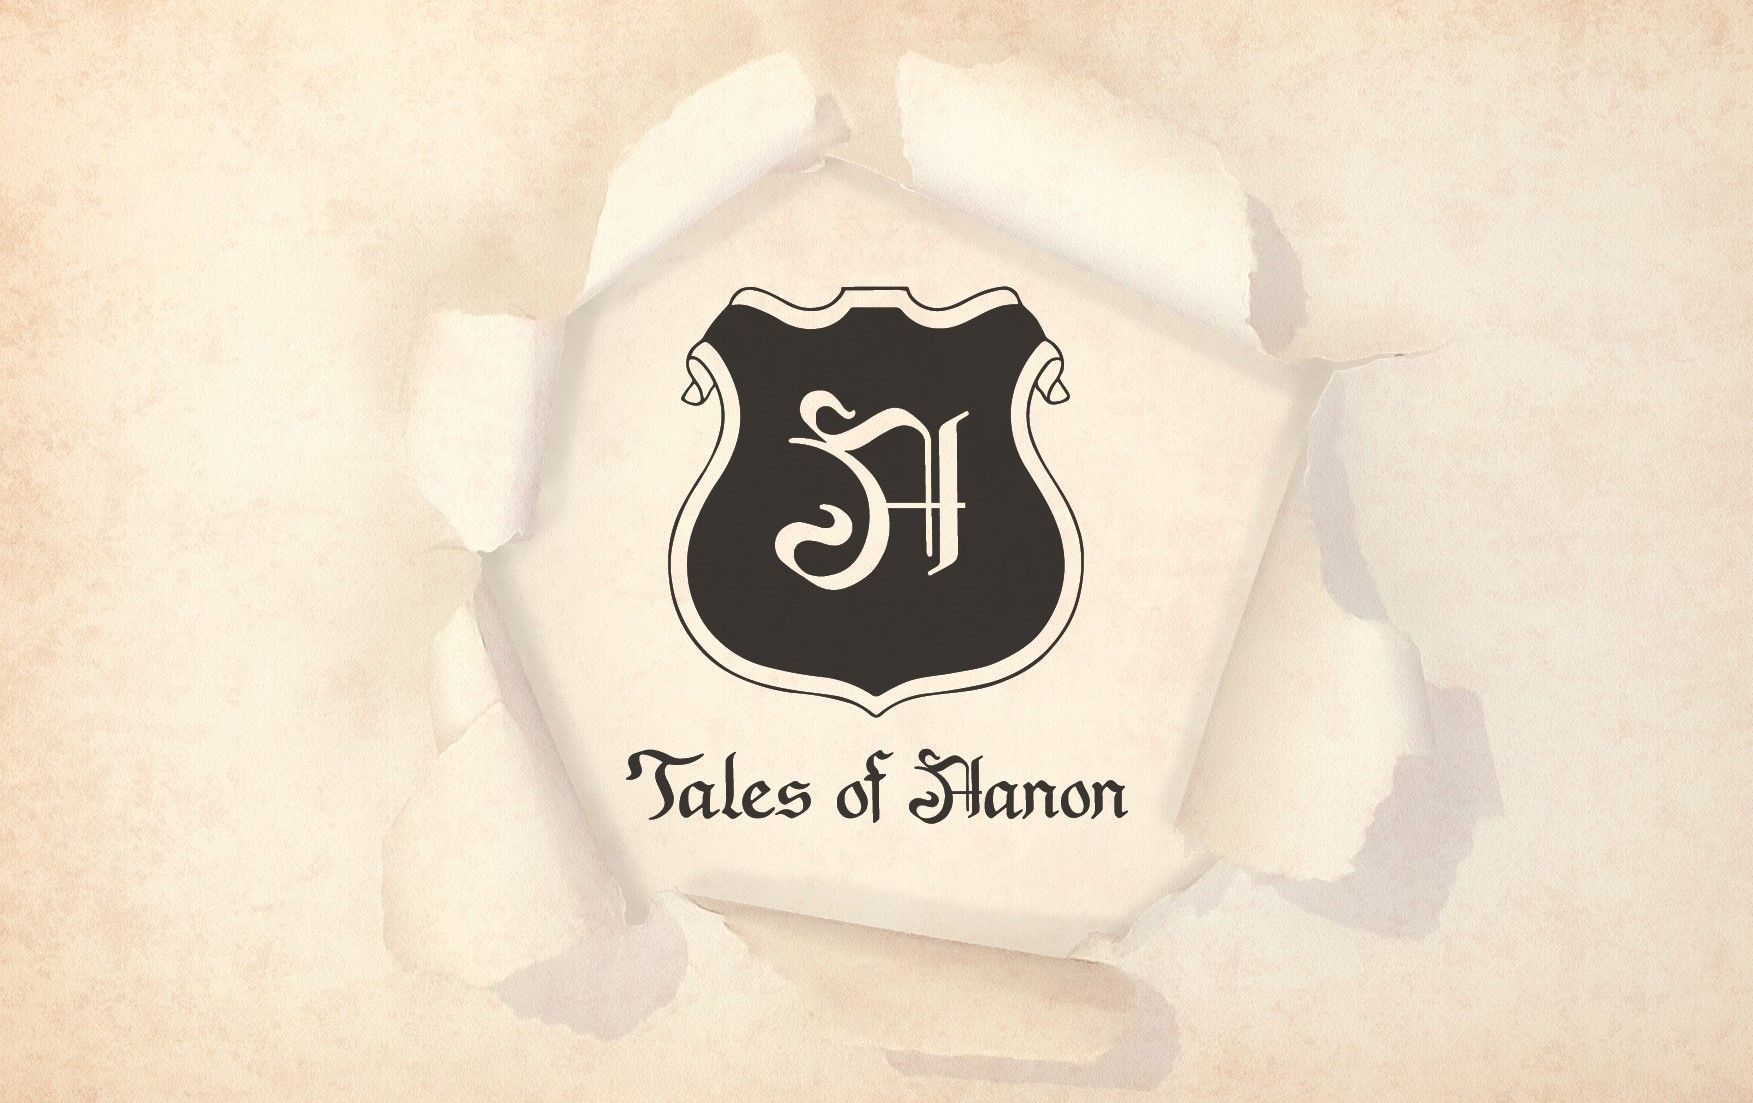 Tales of Aanon - Branding